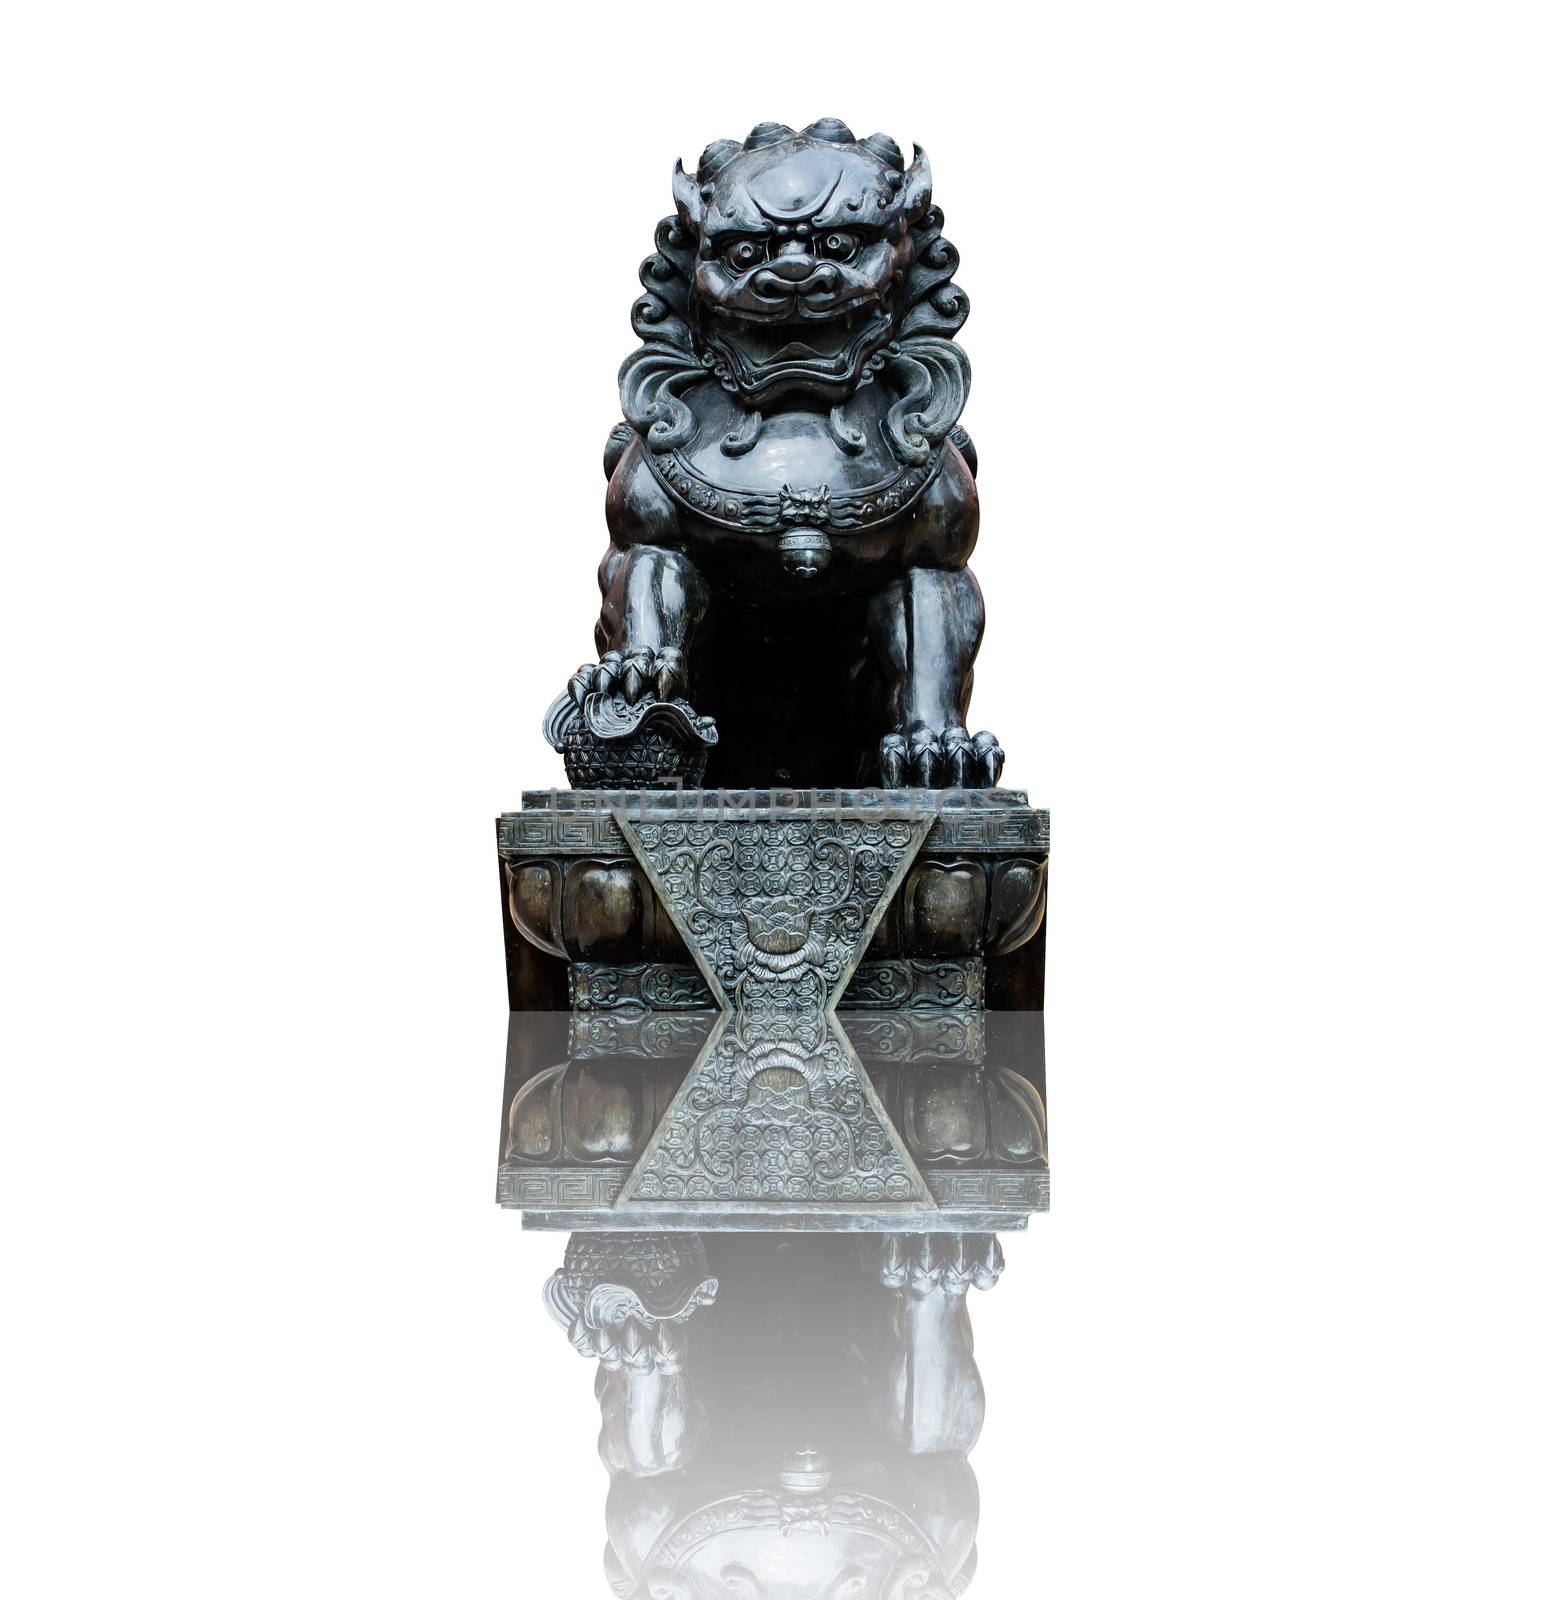 Statue of a lion by Sorapop